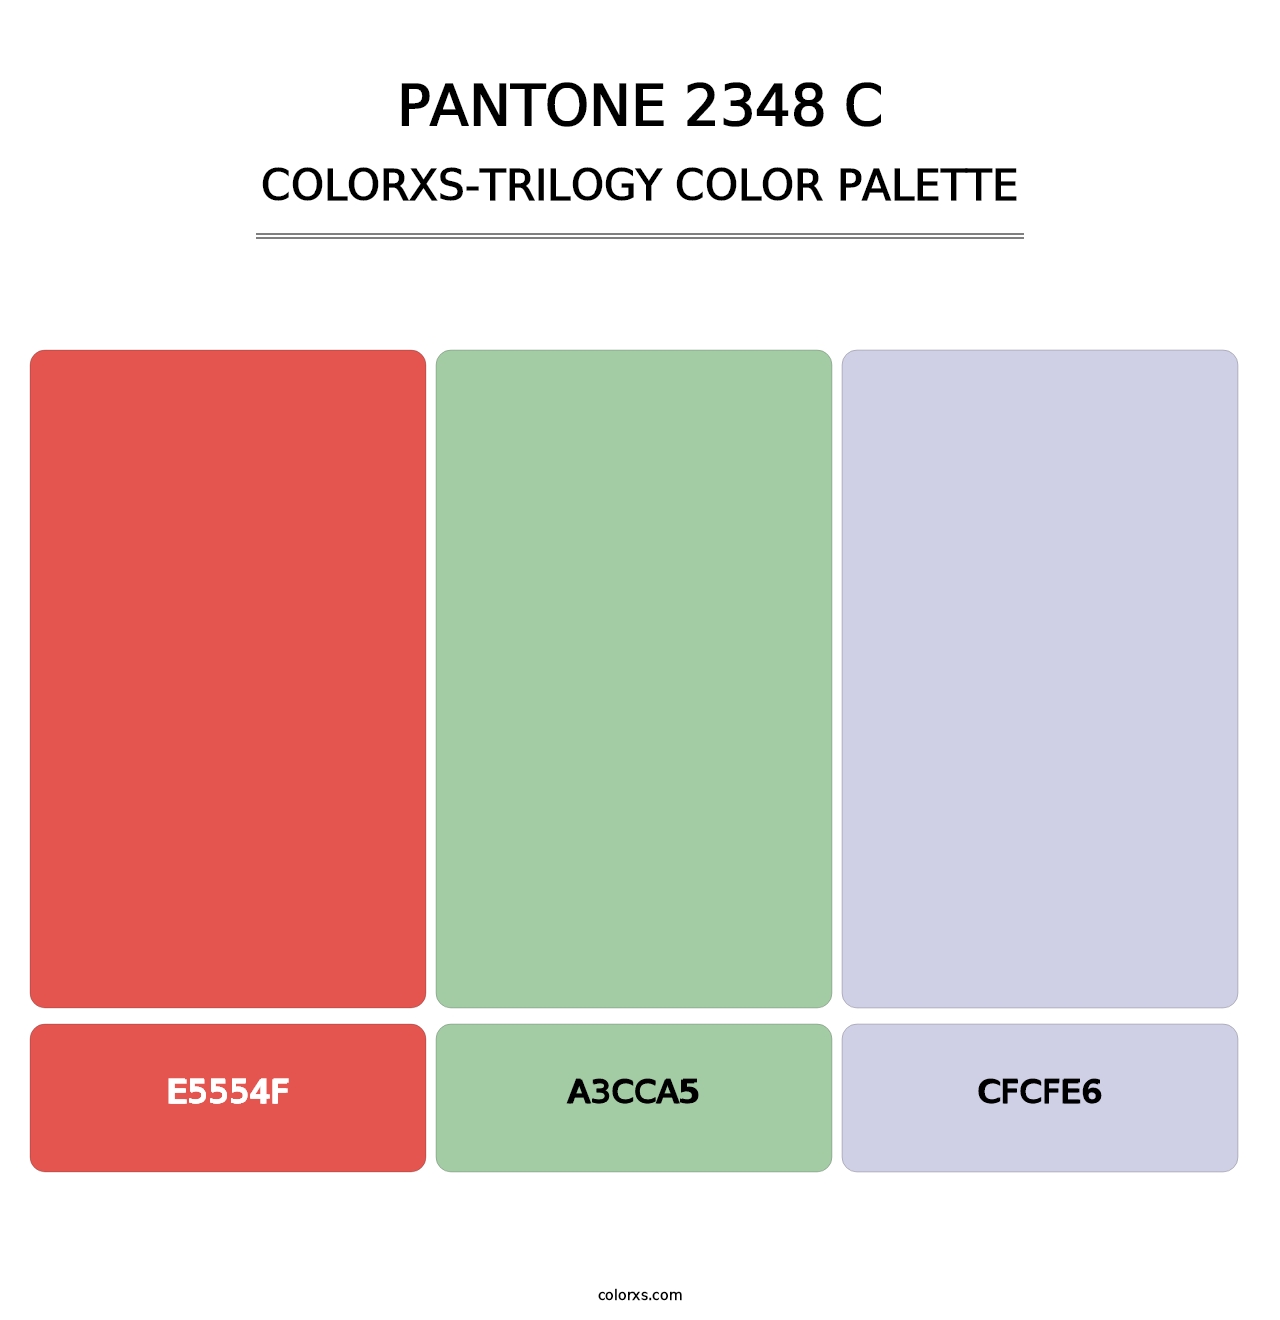 PANTONE 2348 C - Colorxs Trilogy Palette